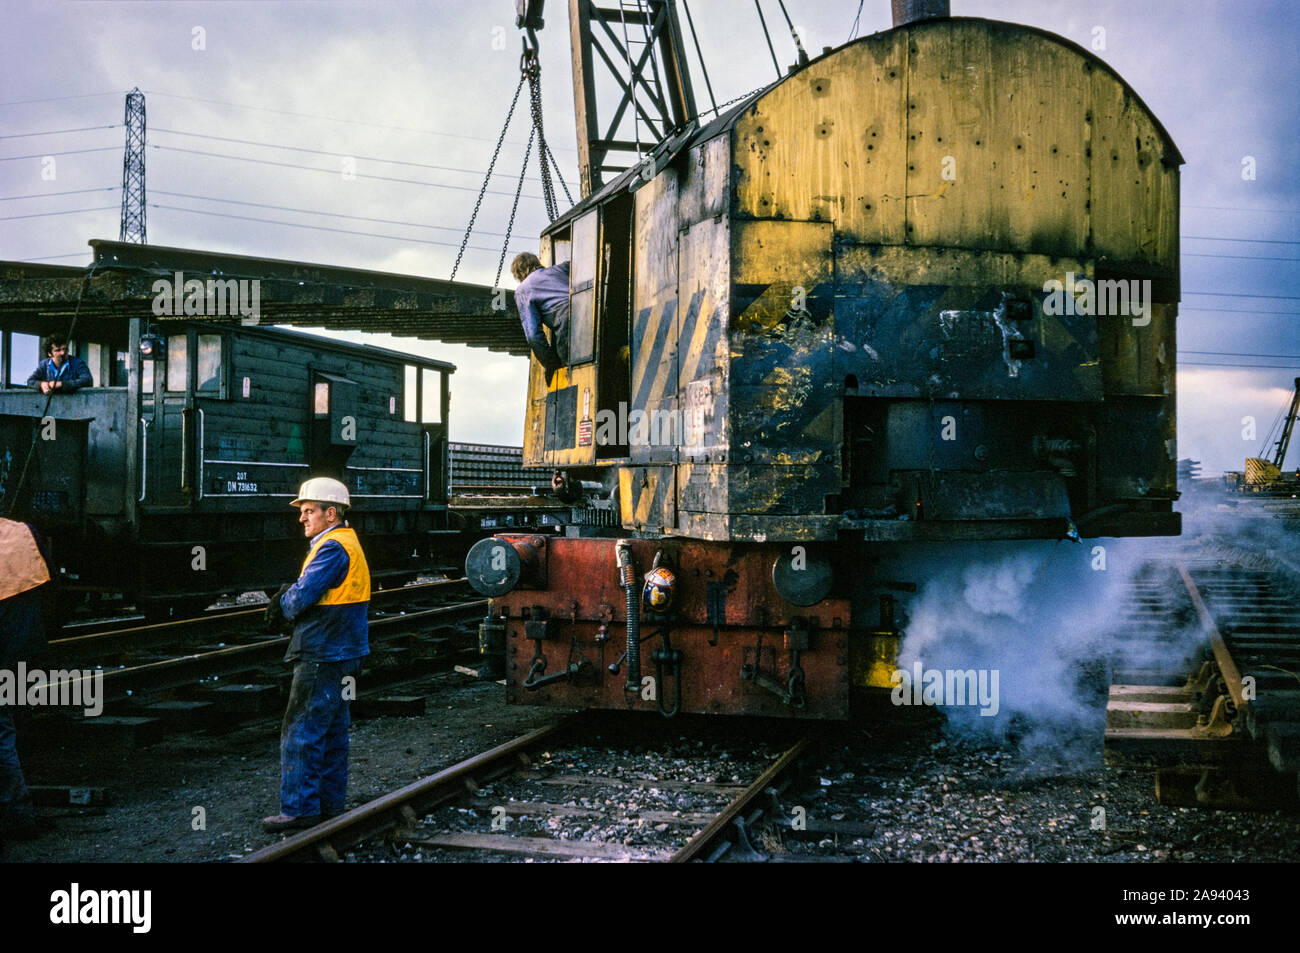 Grue à vapeur au dépôt de British Rail Beighton, 1978 ou 79. Près de Sheffield, Yorkshire, Angleterre, Royaume-Uni Banque D'Images